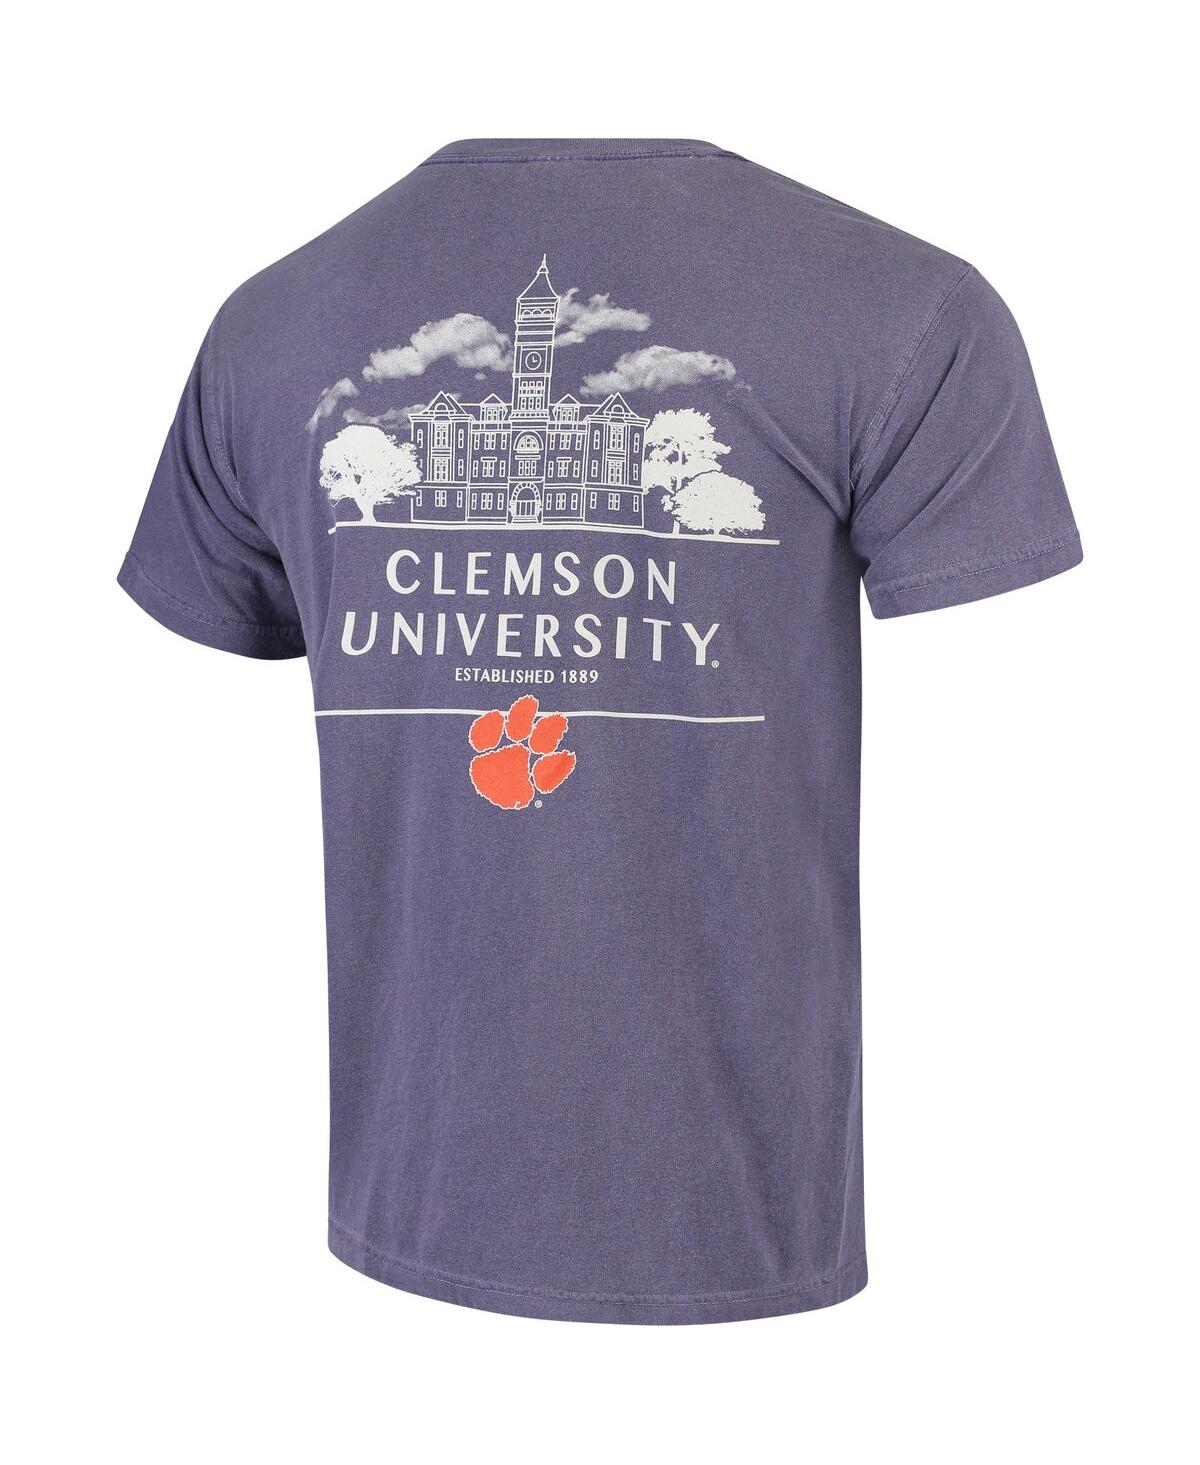 Shop Image One Men's Purple Clemson Tigers Campus Local Comfort Colors T-shirt